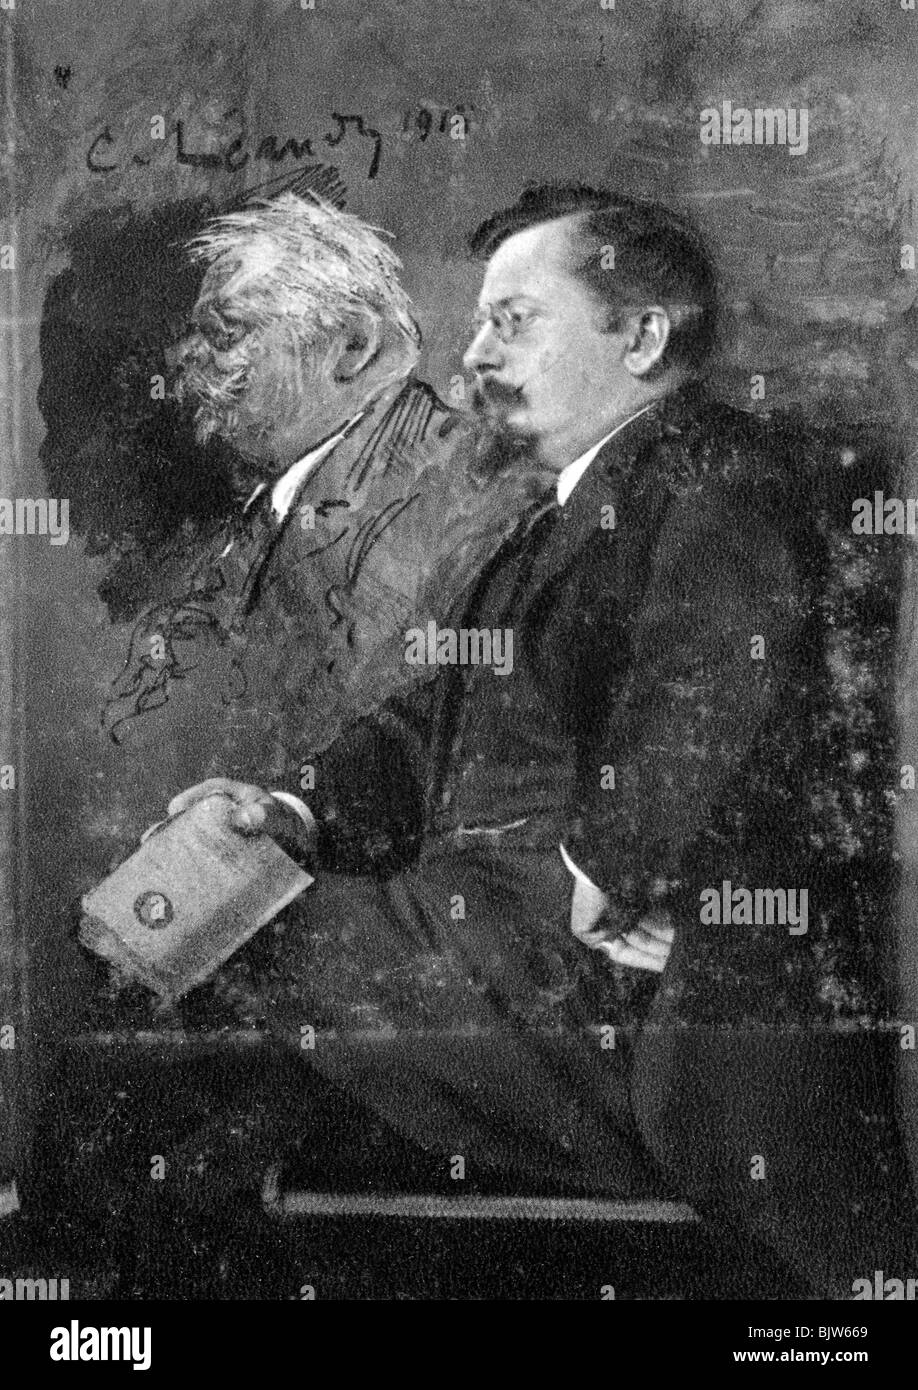 Charles-Lucien LEANDRE, französischer Maler, Zeichner und Bildhauer, 1915. Artist: Unbekannt Stockfoto